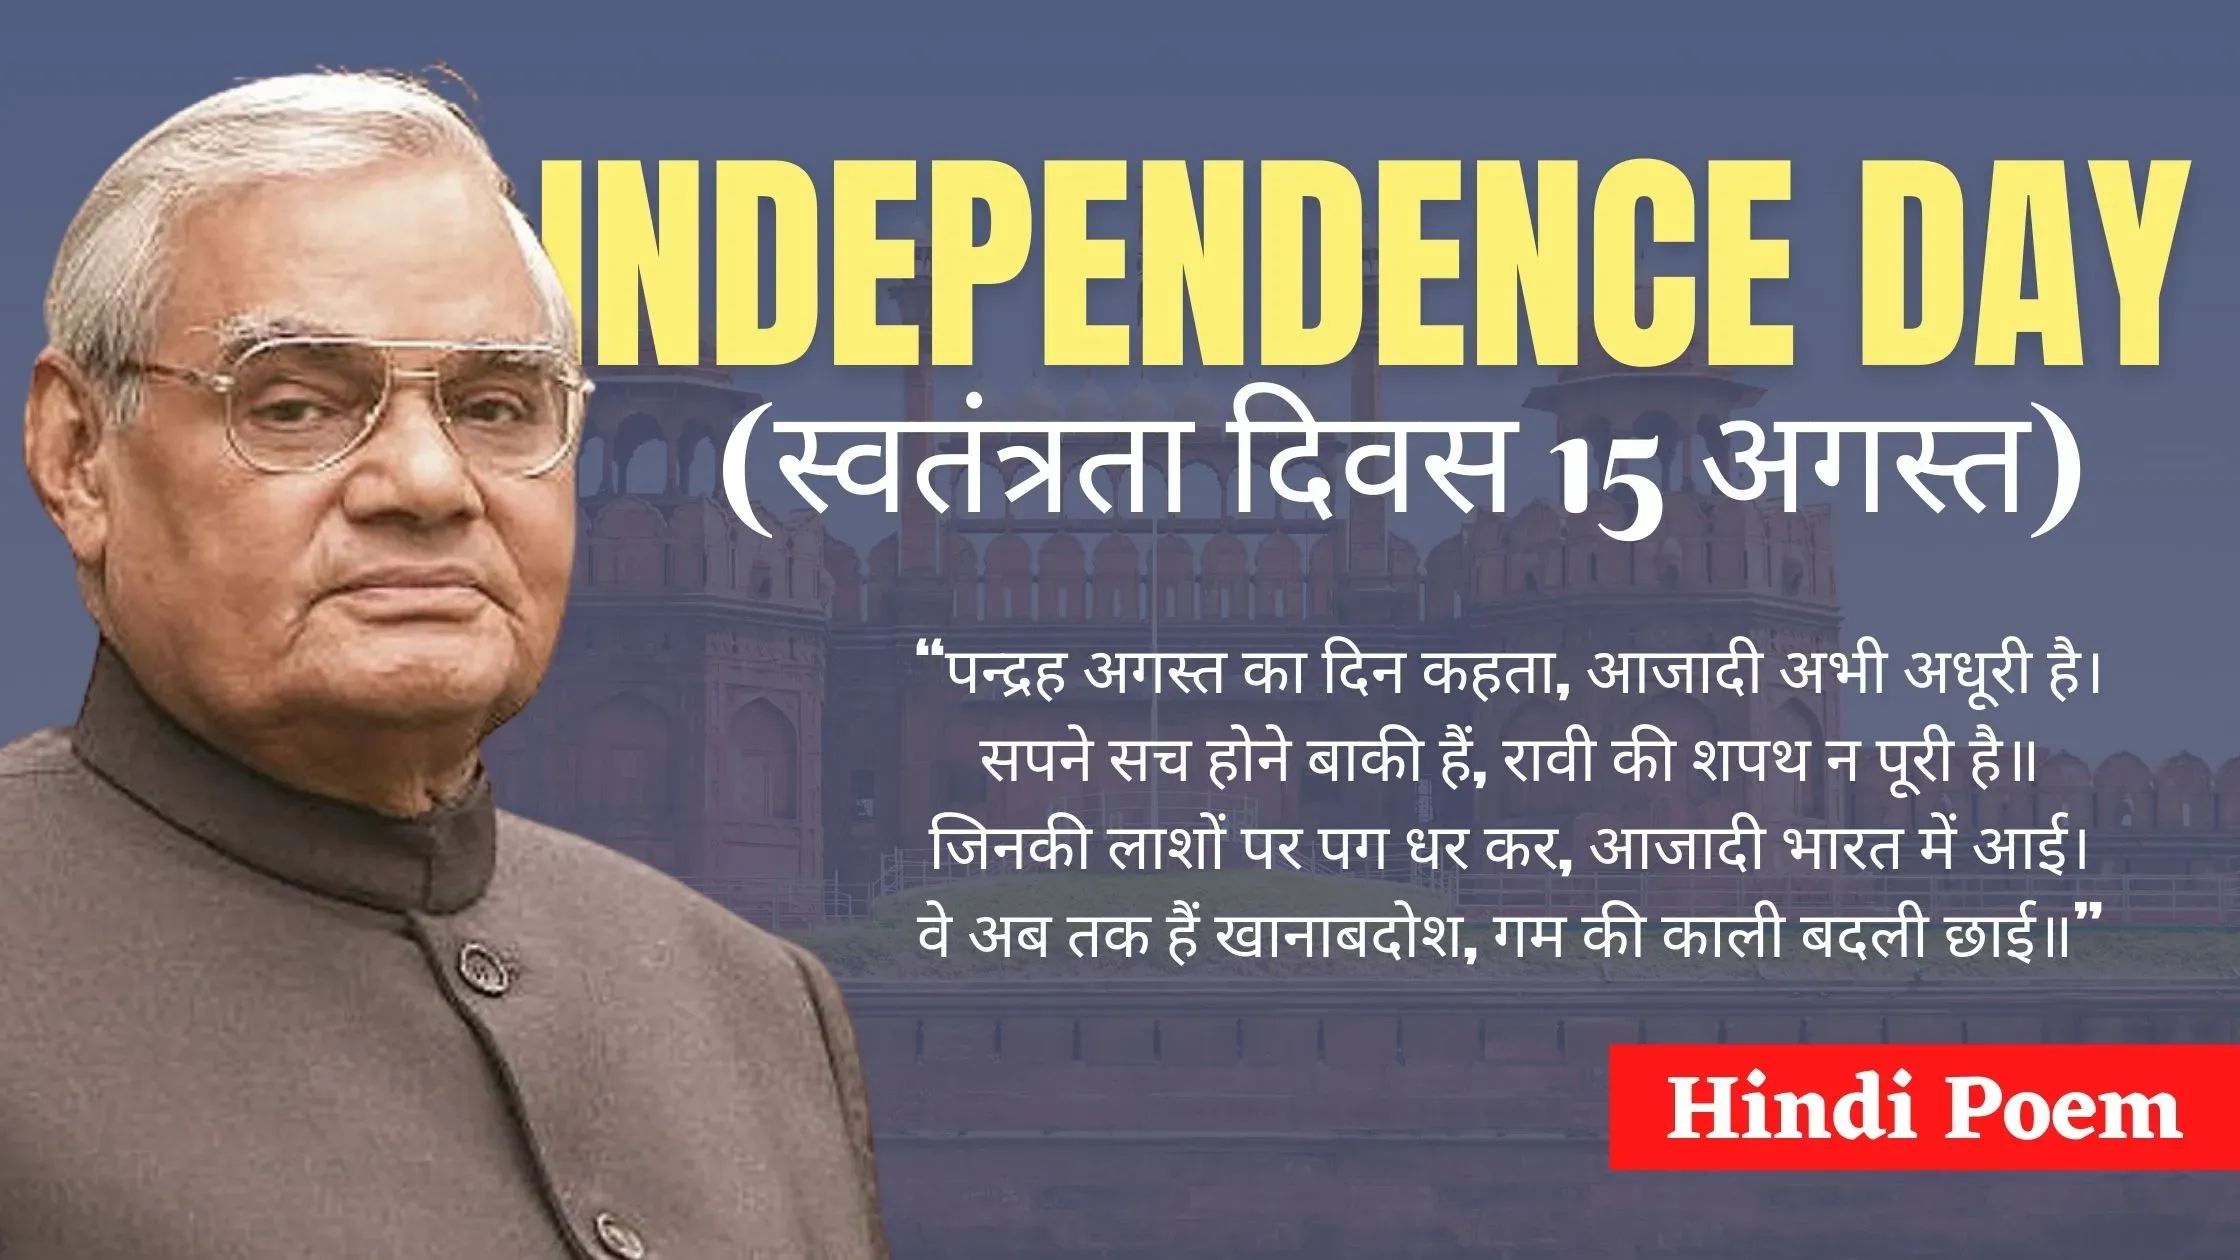 स्वतंत्रता दिवस 15 अगस्त पर हिंदी कविता, Poem on Independence Day In Hindi